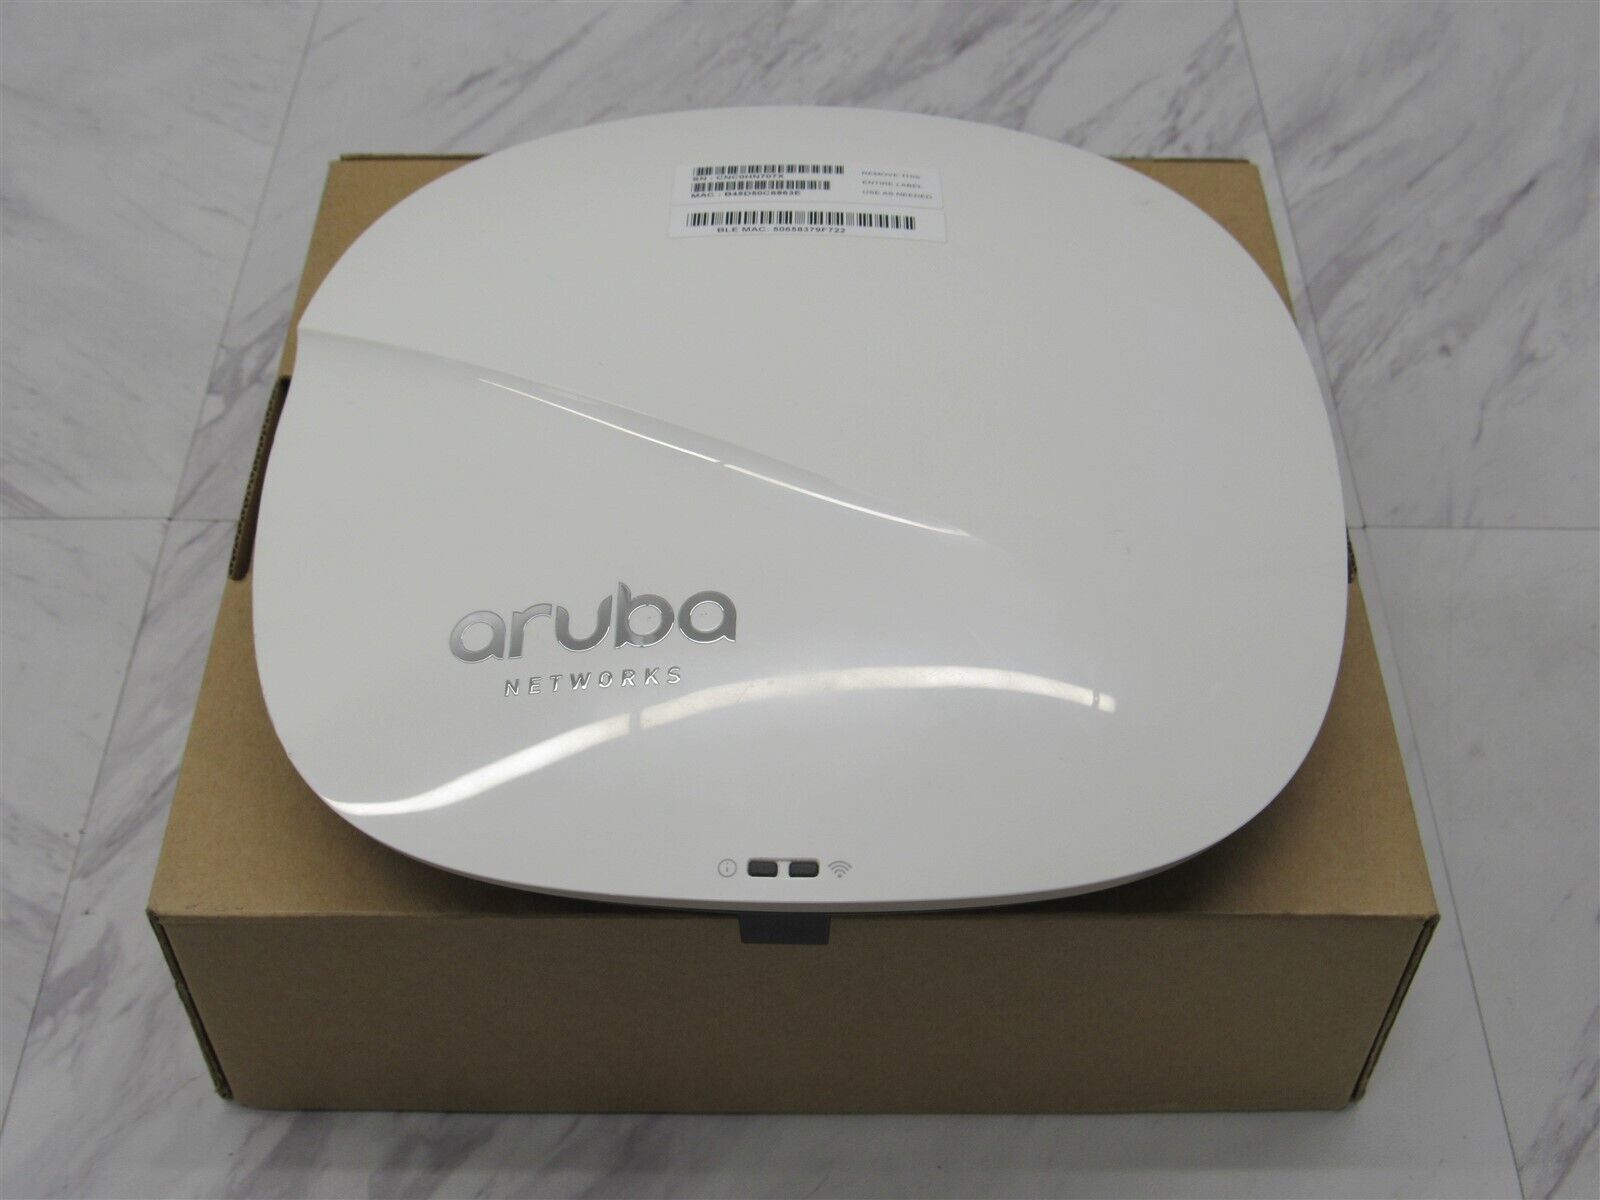 Tìm hiểu về tính năng của wifi chuyên dụng Aruba